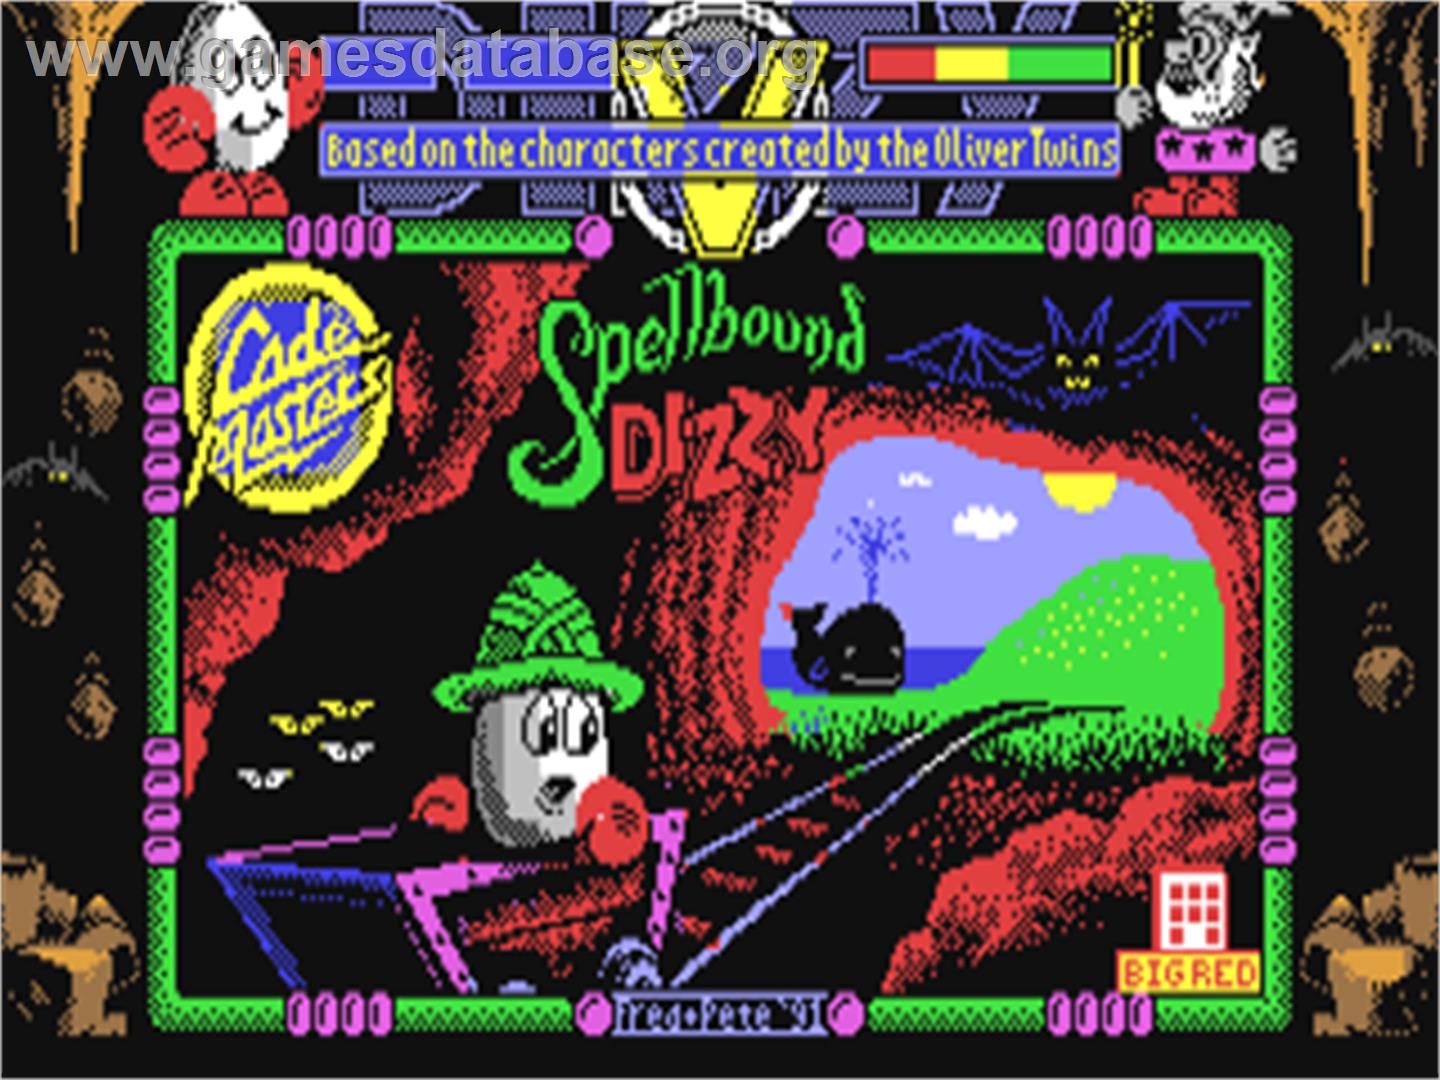 Spellbound Dizzy - Commodore 64 - Artwork - Title Screen